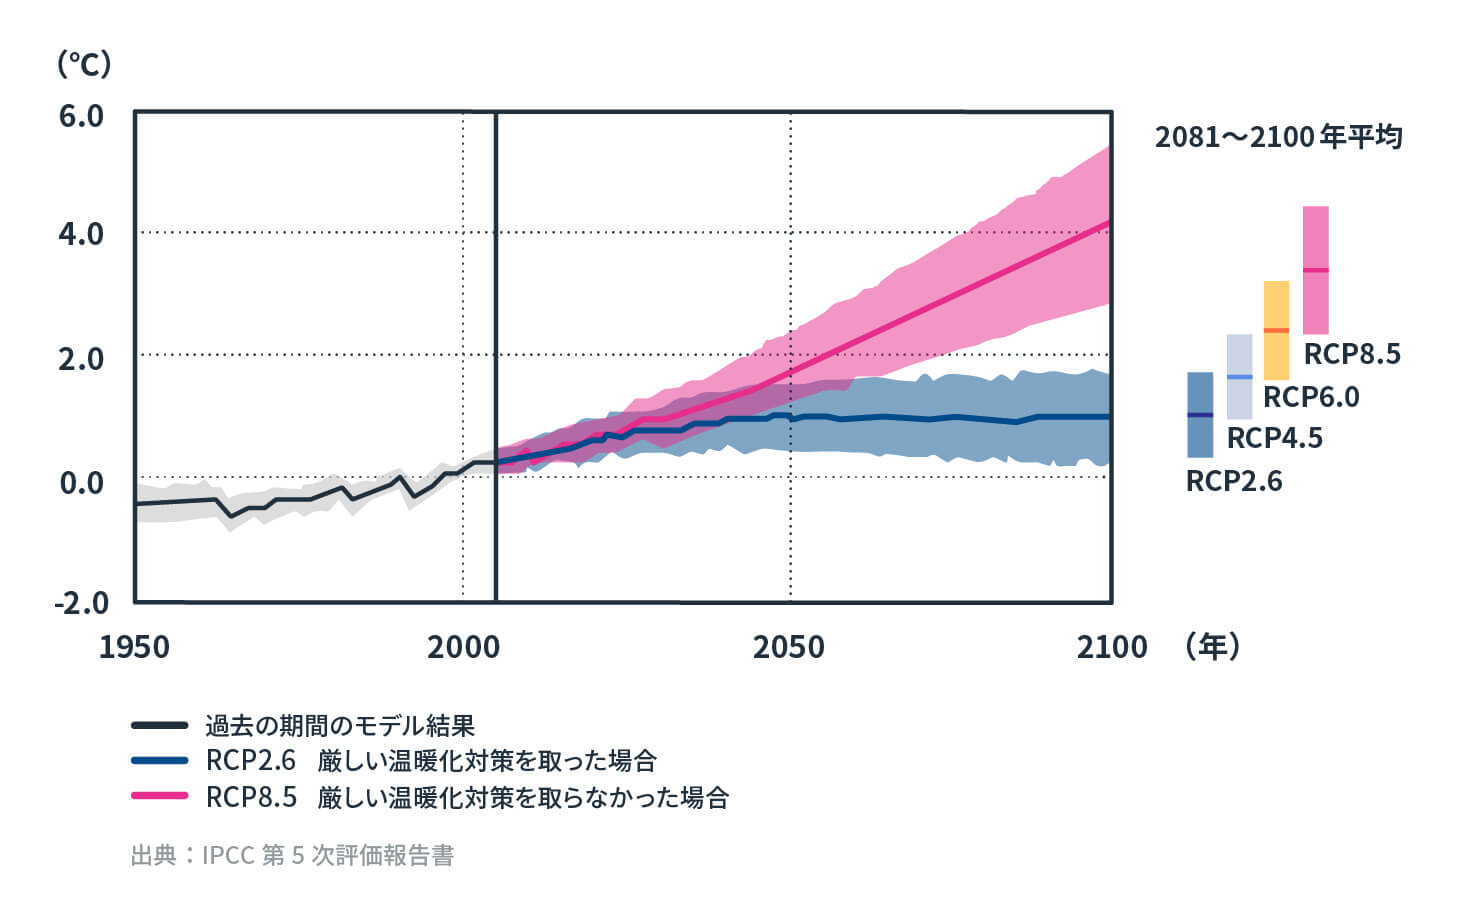 1986年～2005年を基準とした世界の年平均地上気温の変化